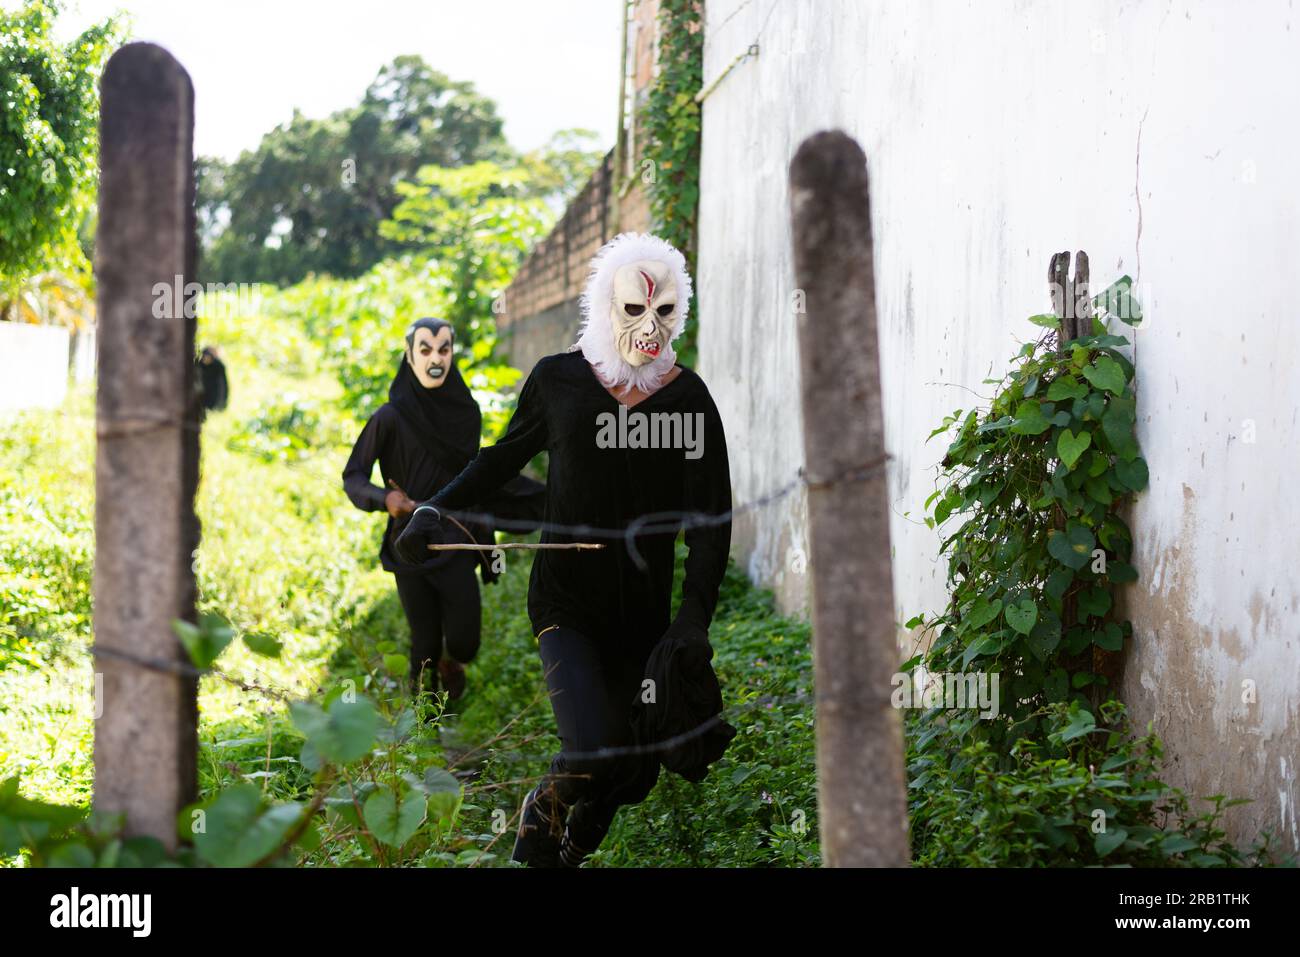 Santo Amaro, Bahia, Brasile - 24 luglio 2022: Due persone vestite di nero con una maschera terroristica vengono viste durante una dimostrazione culturale ad Acupe nel ci Foto Stock